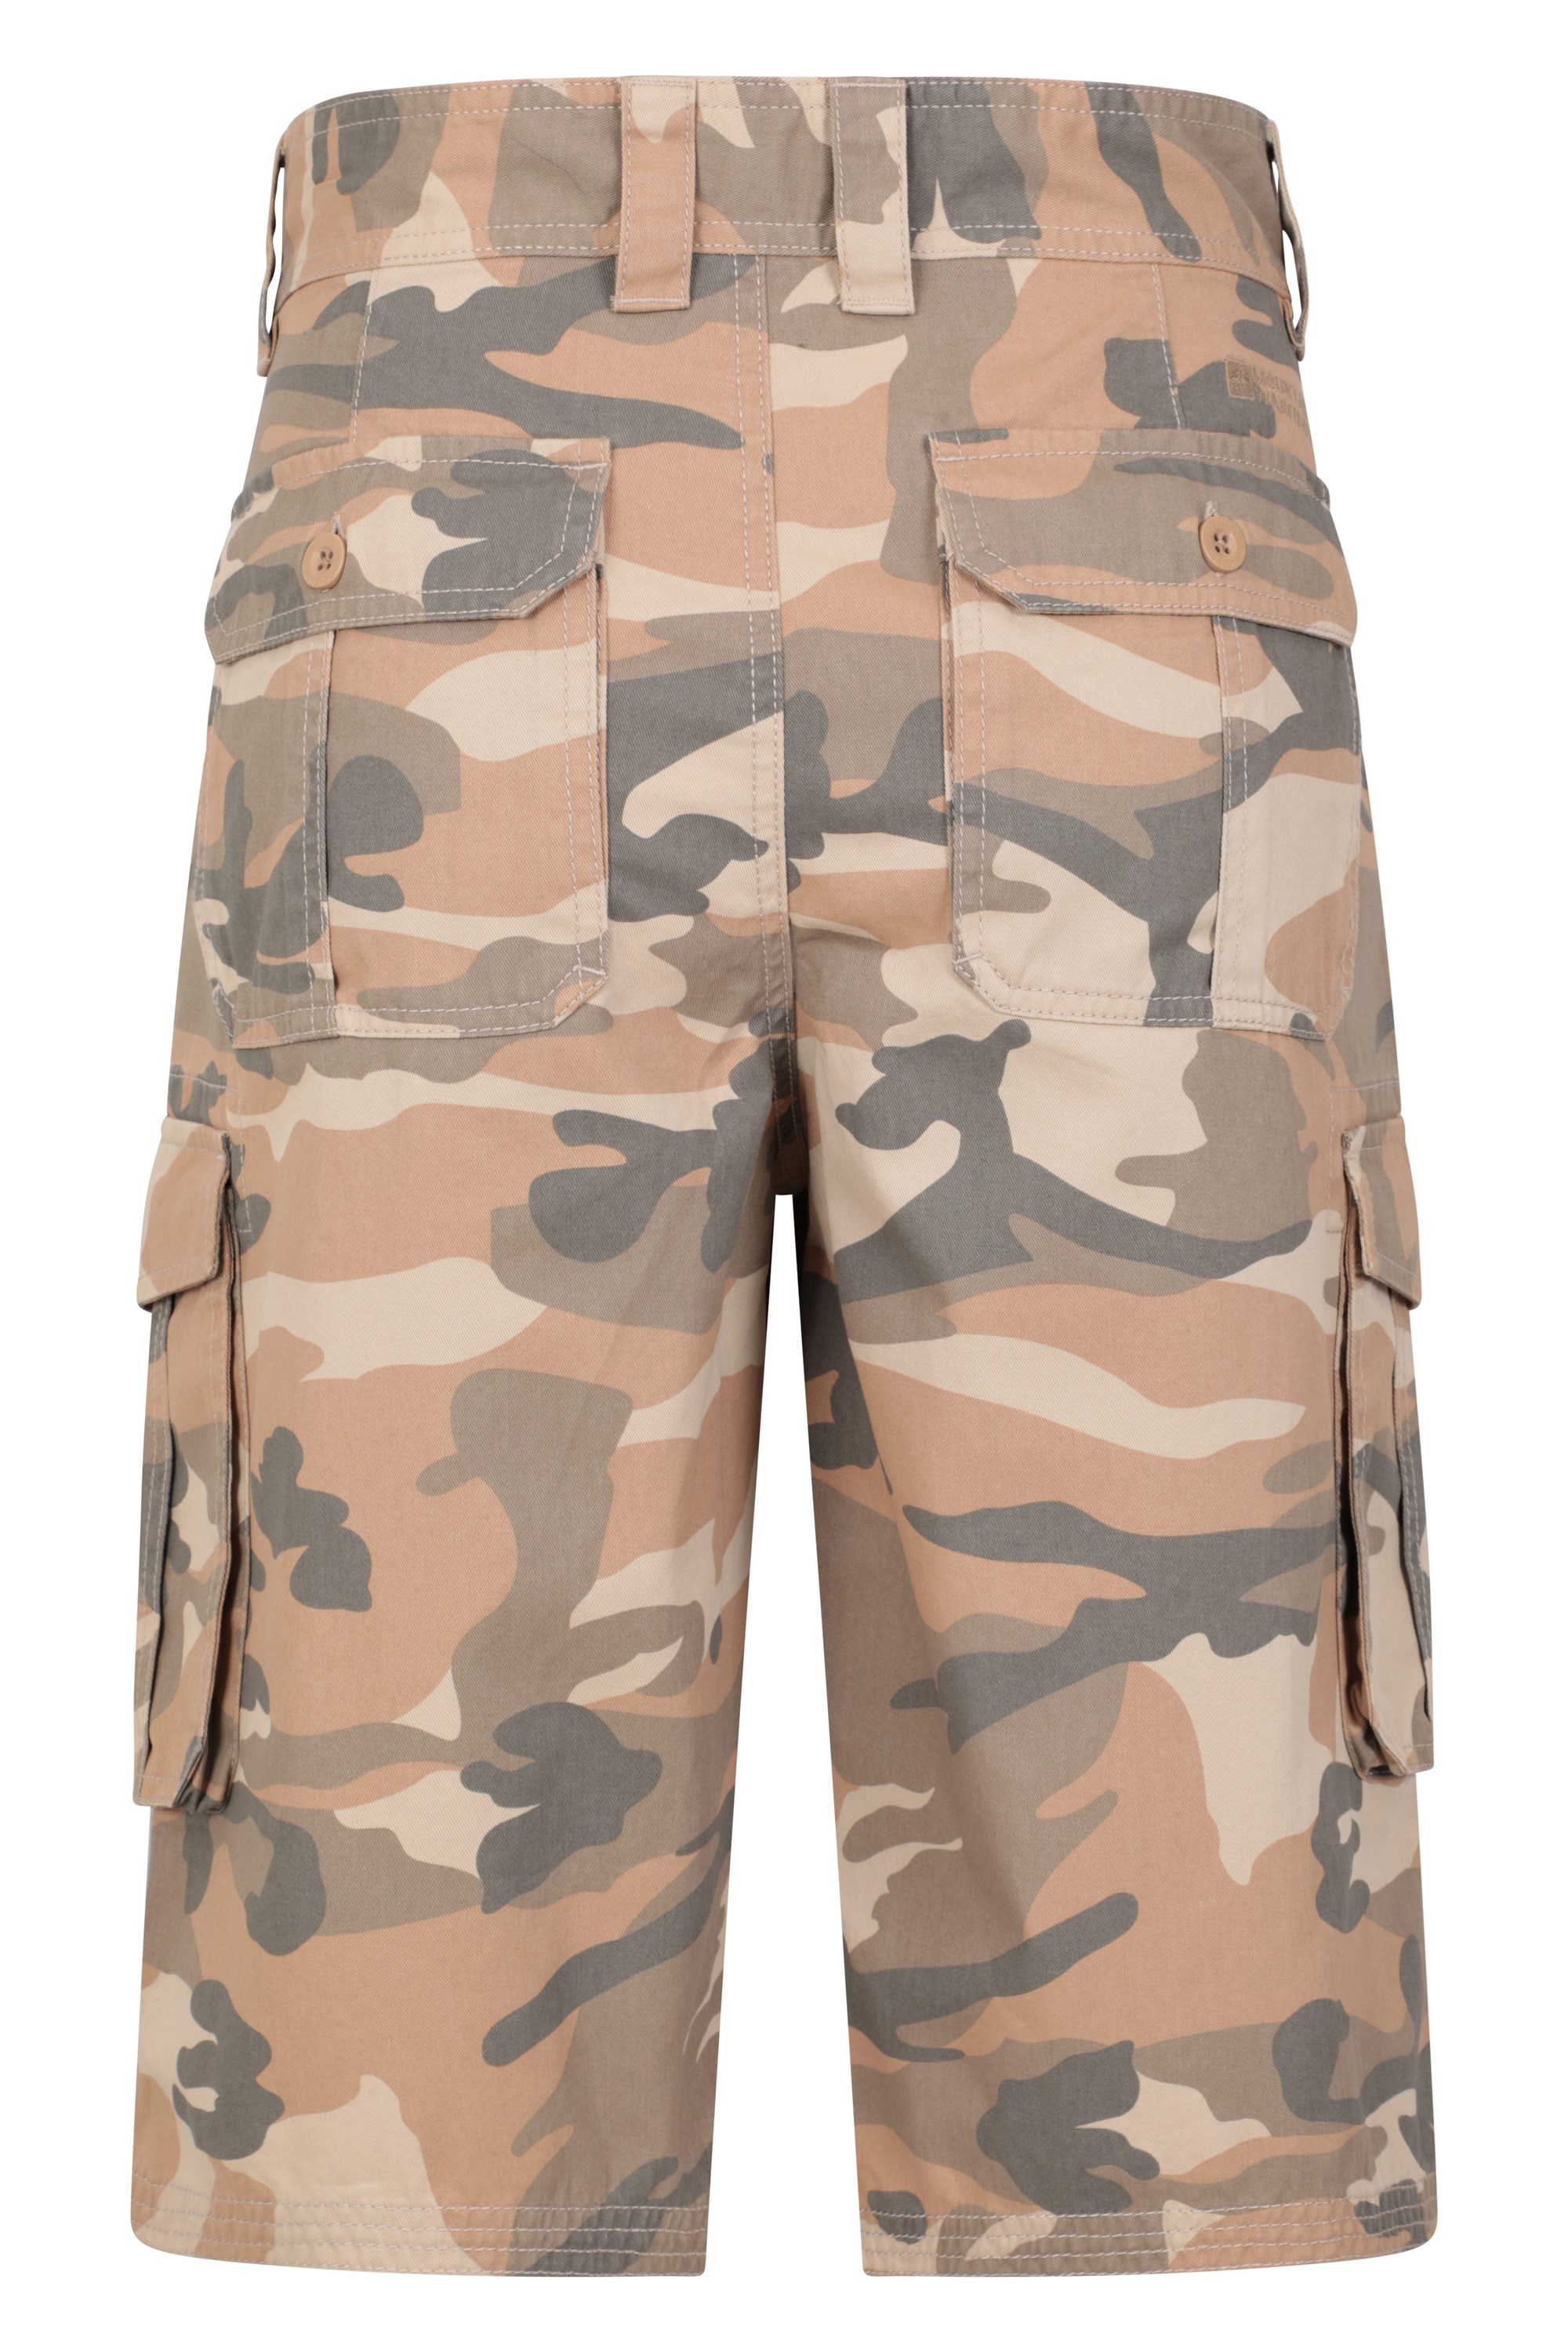 Mountain Warehouse Mens Camo Cargo Shorts - Brown | Size W30